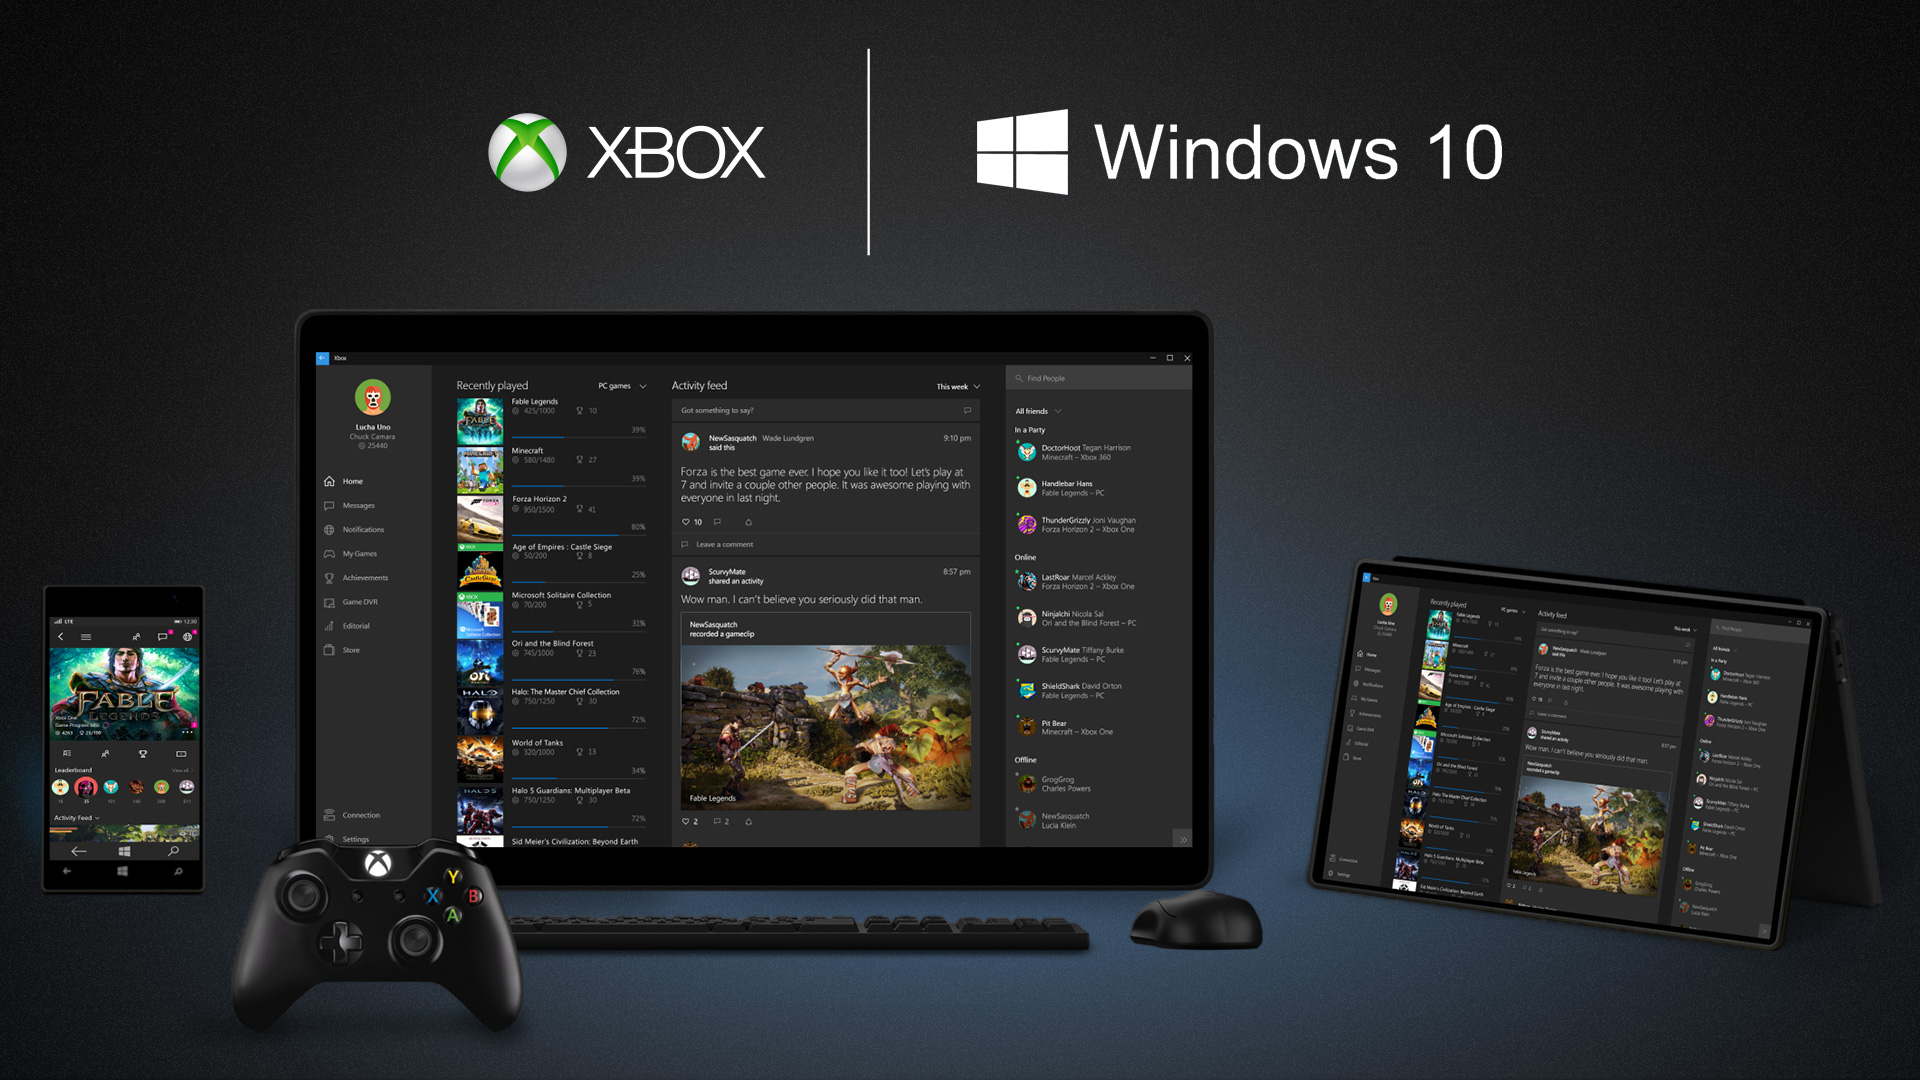 Xbox-App-On-Windows-10-Devices